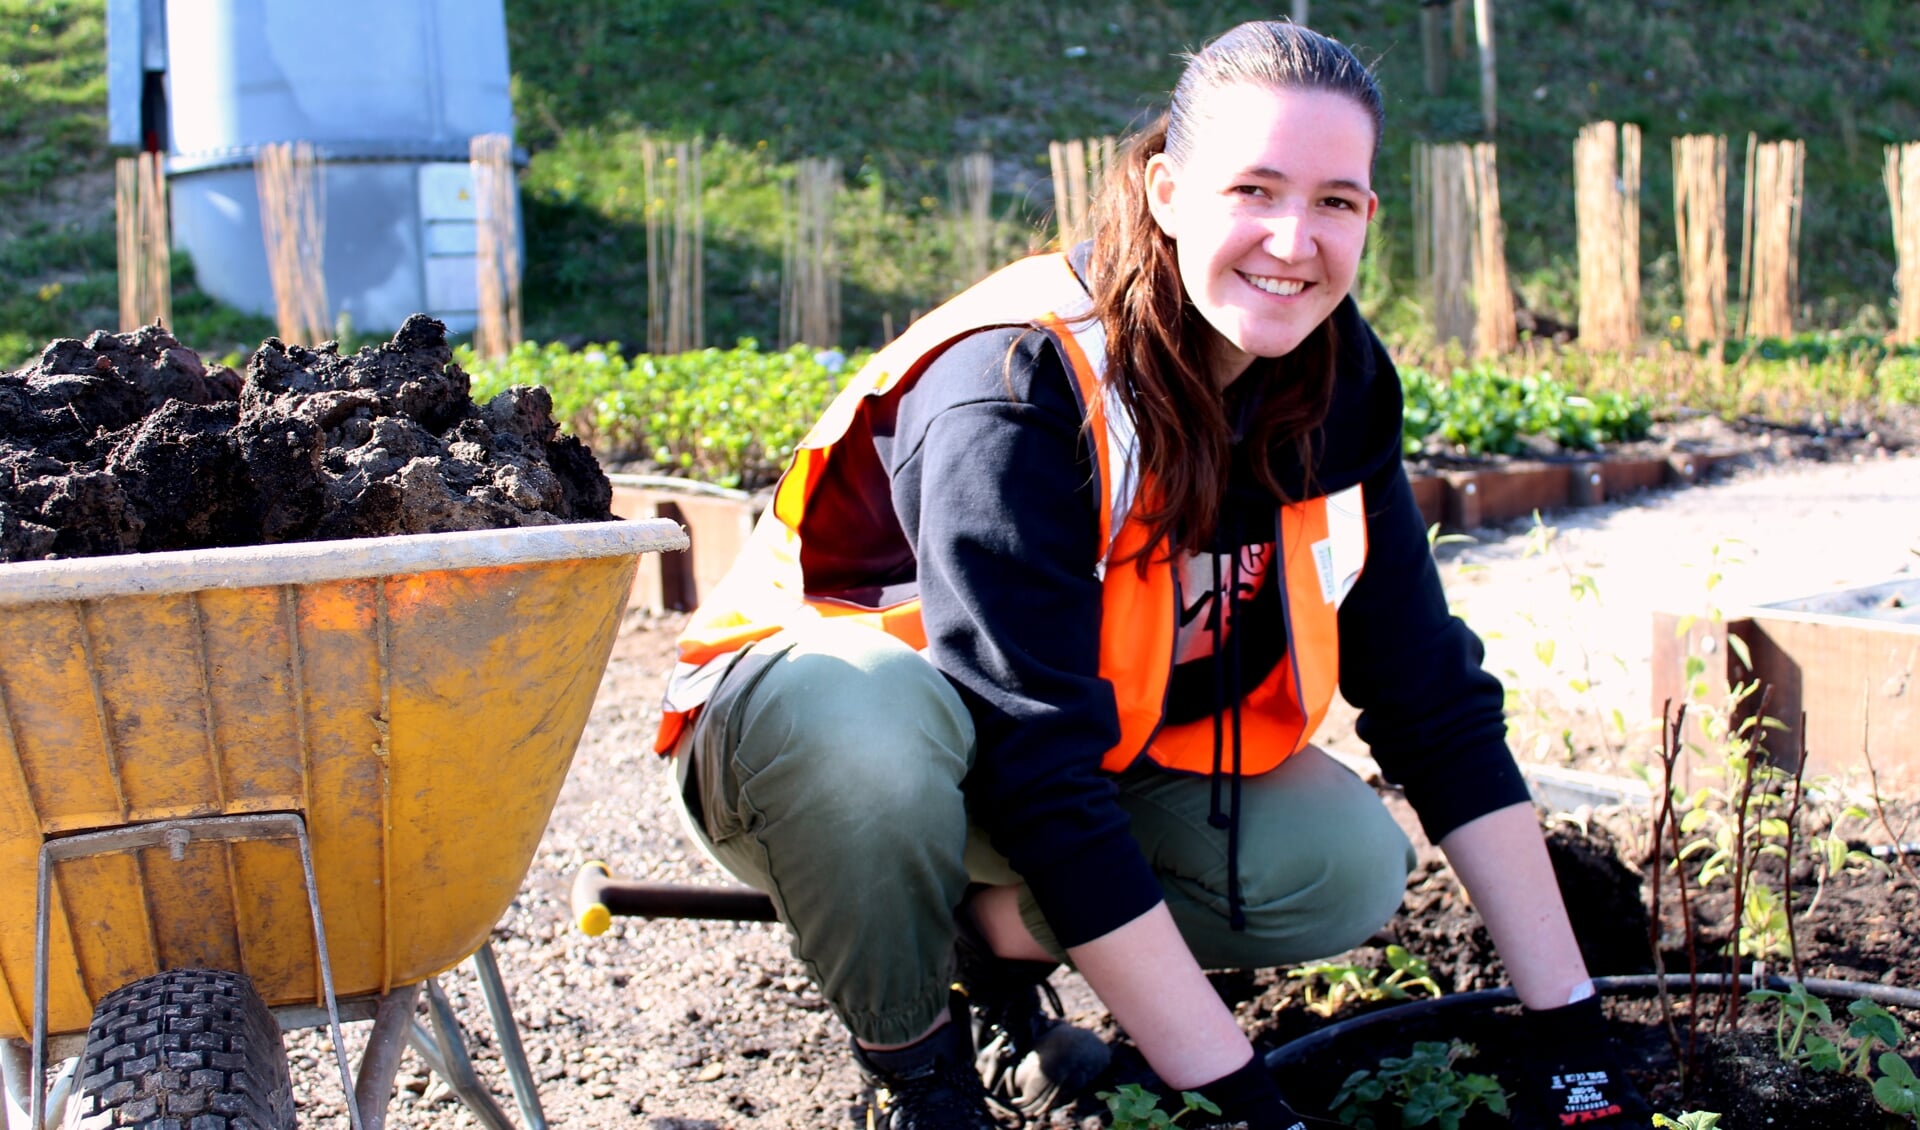 Boomteeltstudente Romy Kraan (21) heeft meegeholpen met aanplanten van de 'From Boskoop' kavel op de Floriade.